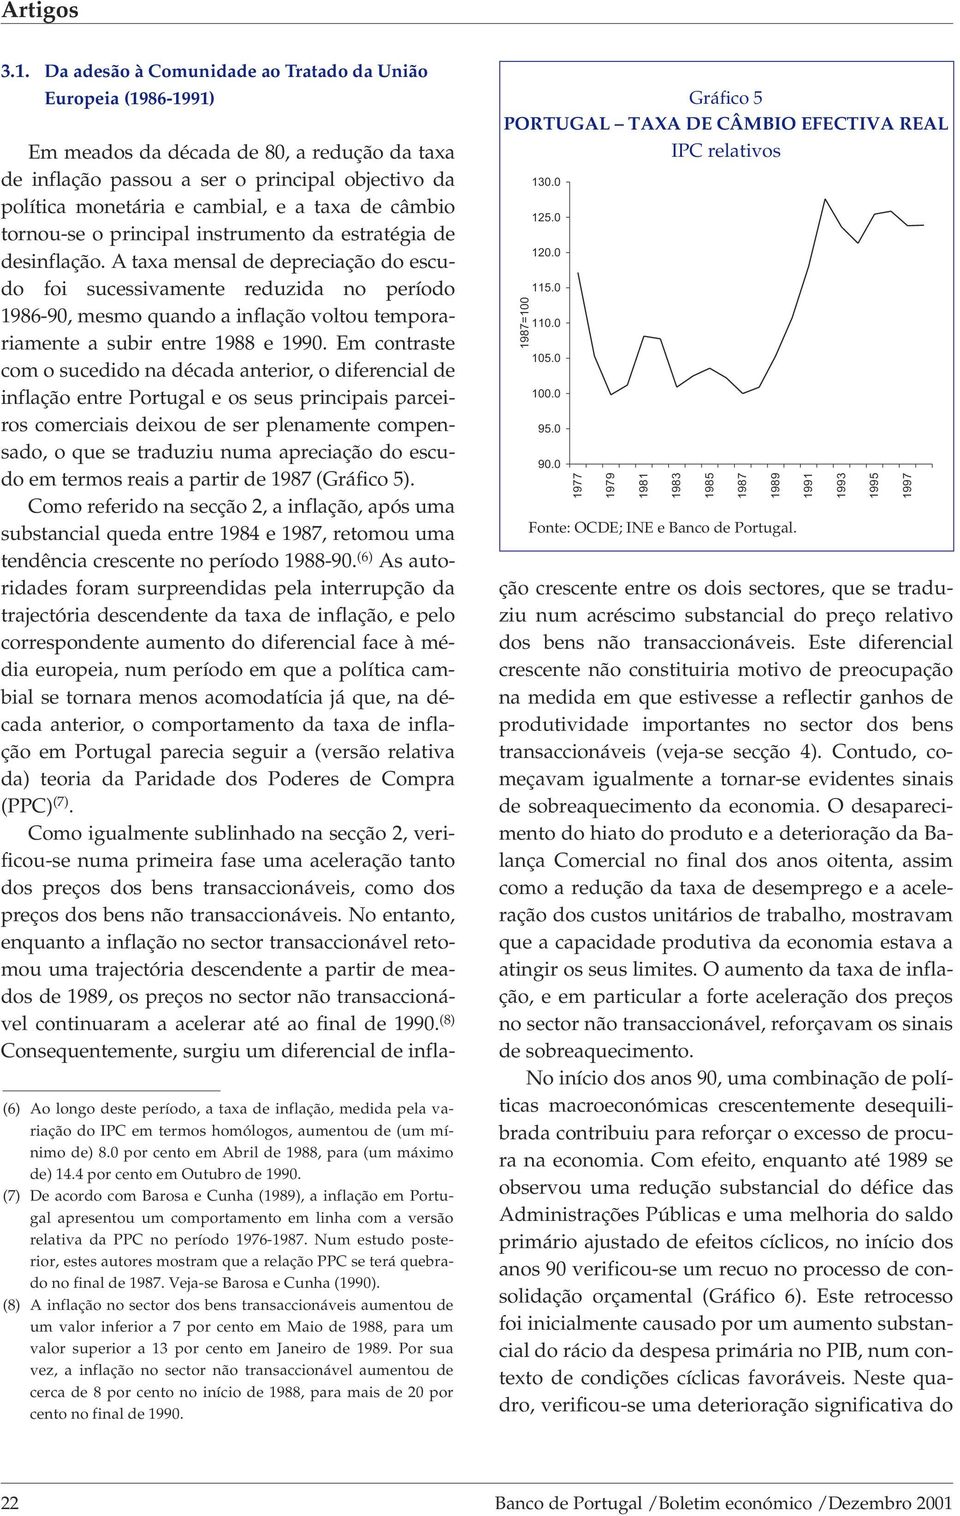 (7) De acordo com Barosa e Cunha (), a inflação em Portugal apresentou um comportamento em linha com a versão relativa da PPC no período 1976-.